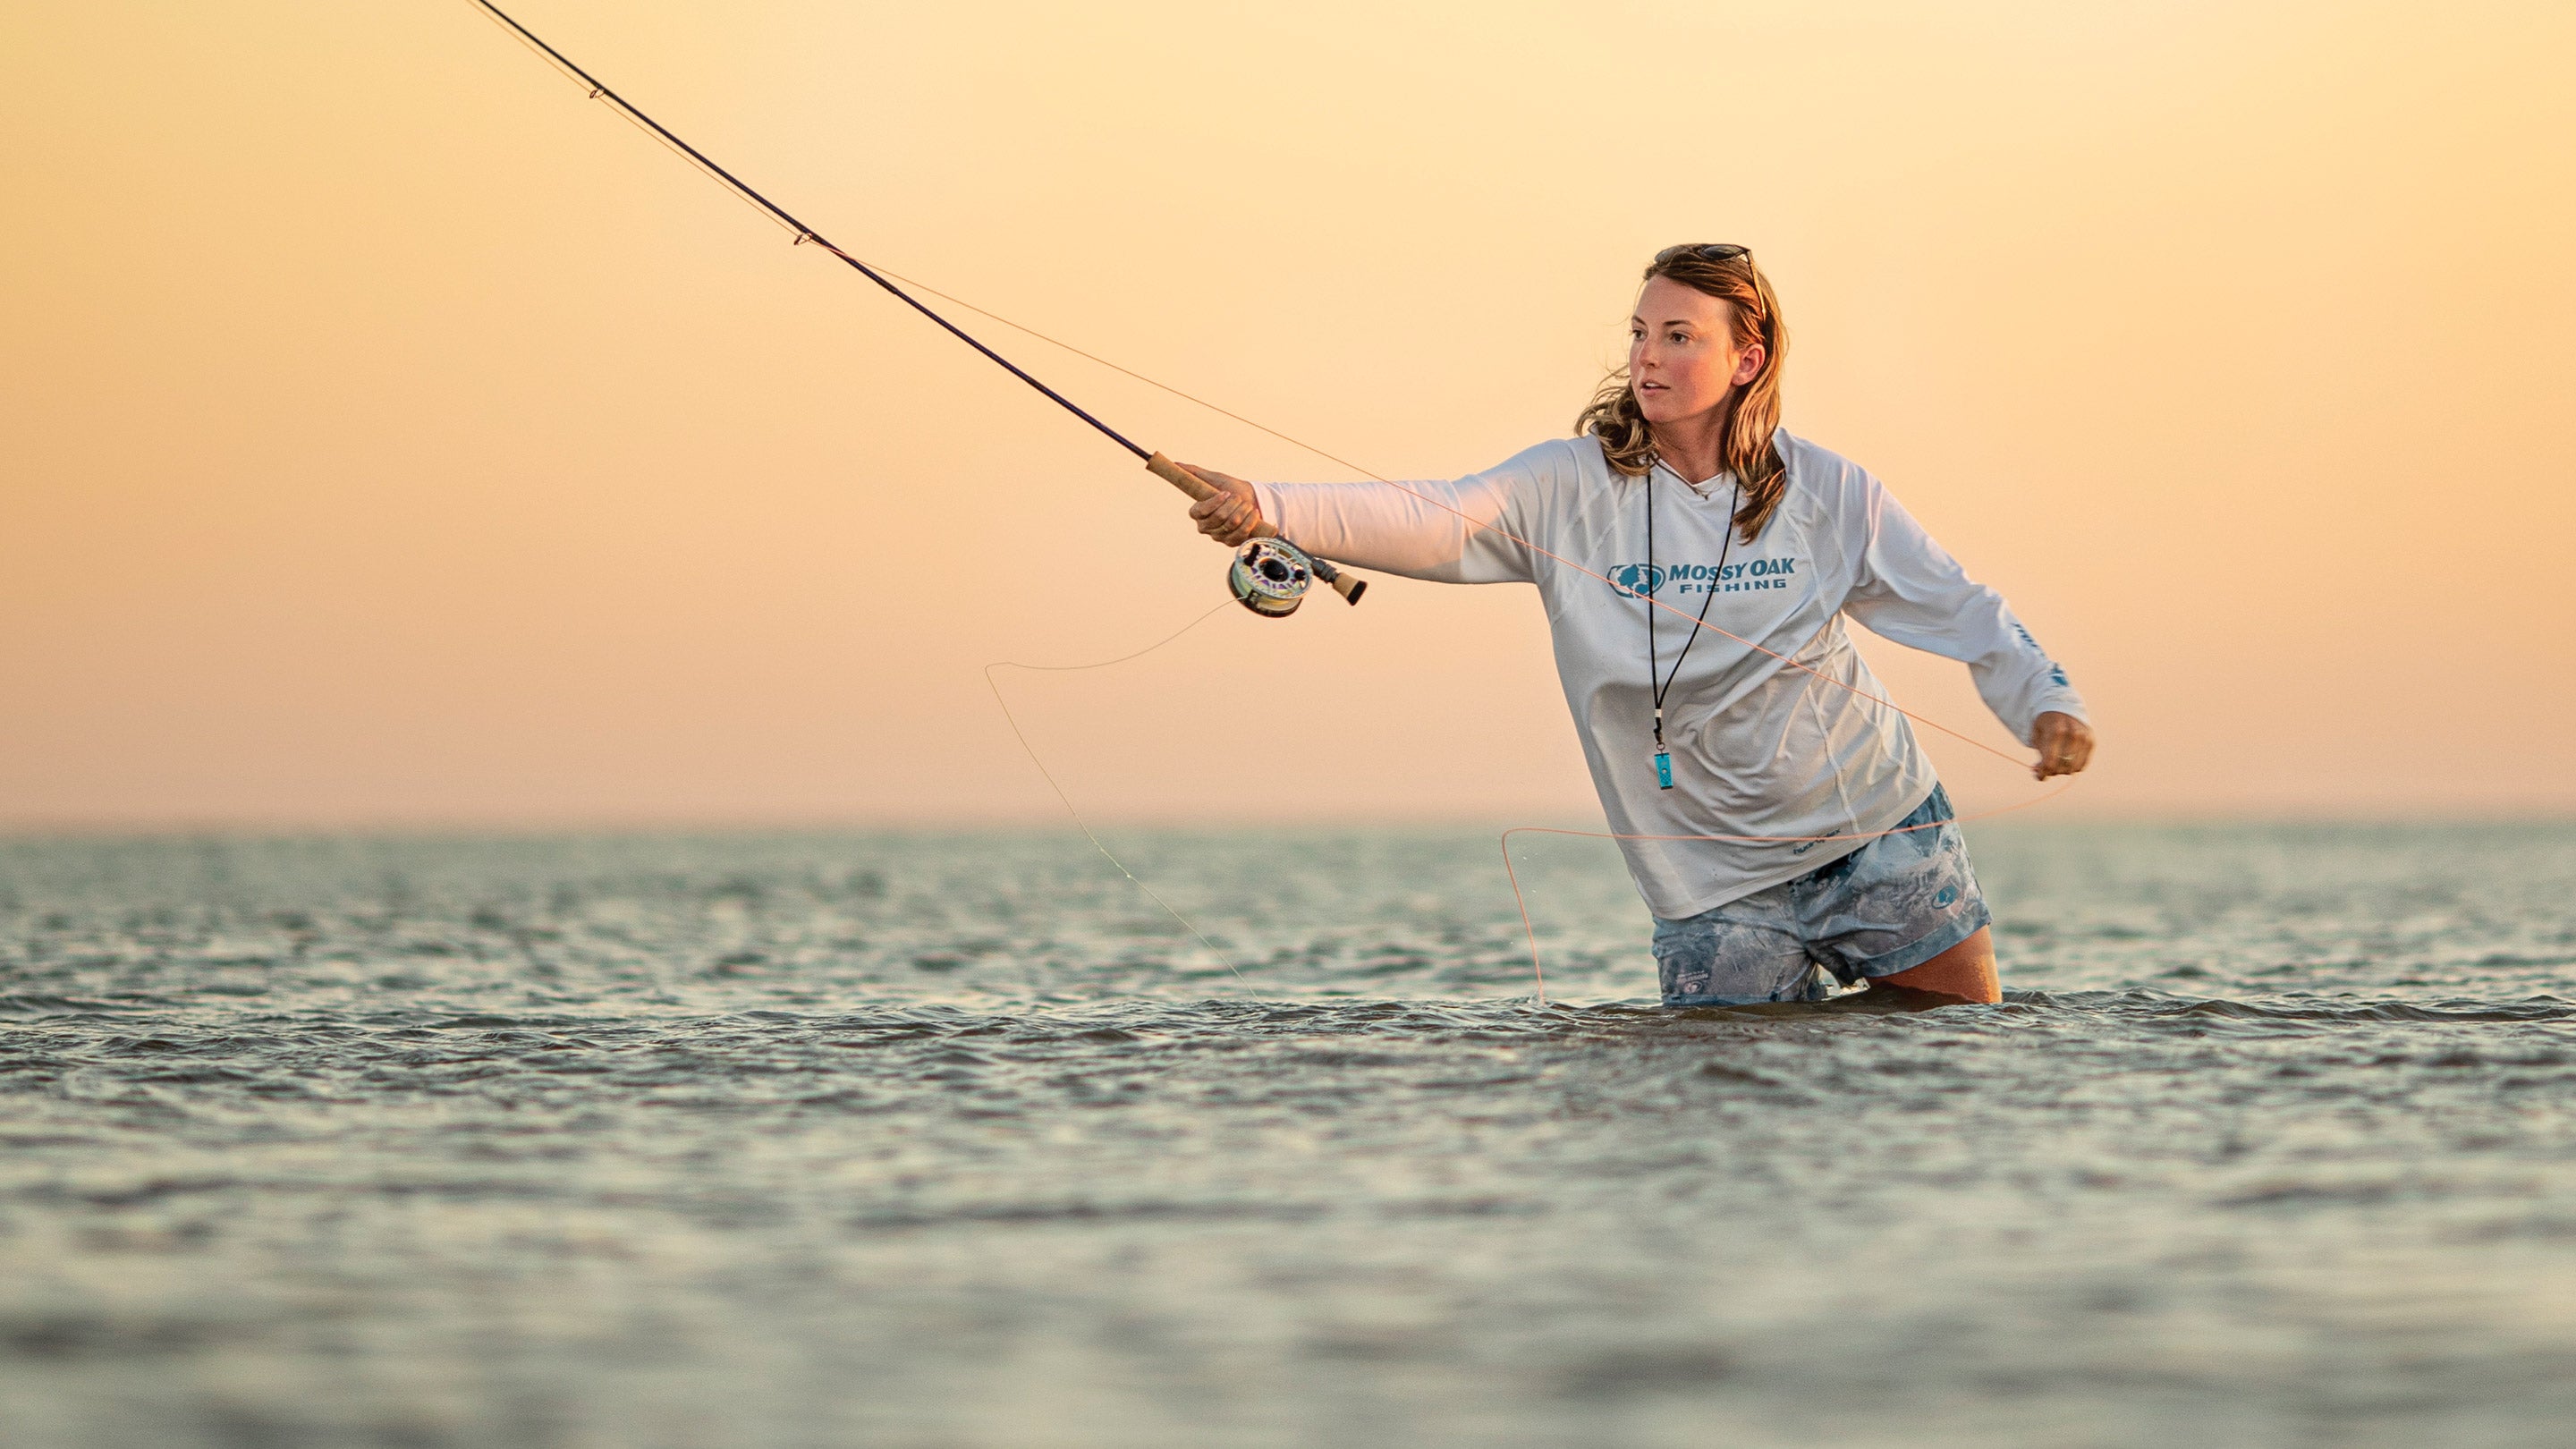 Women's Fishing Shorts